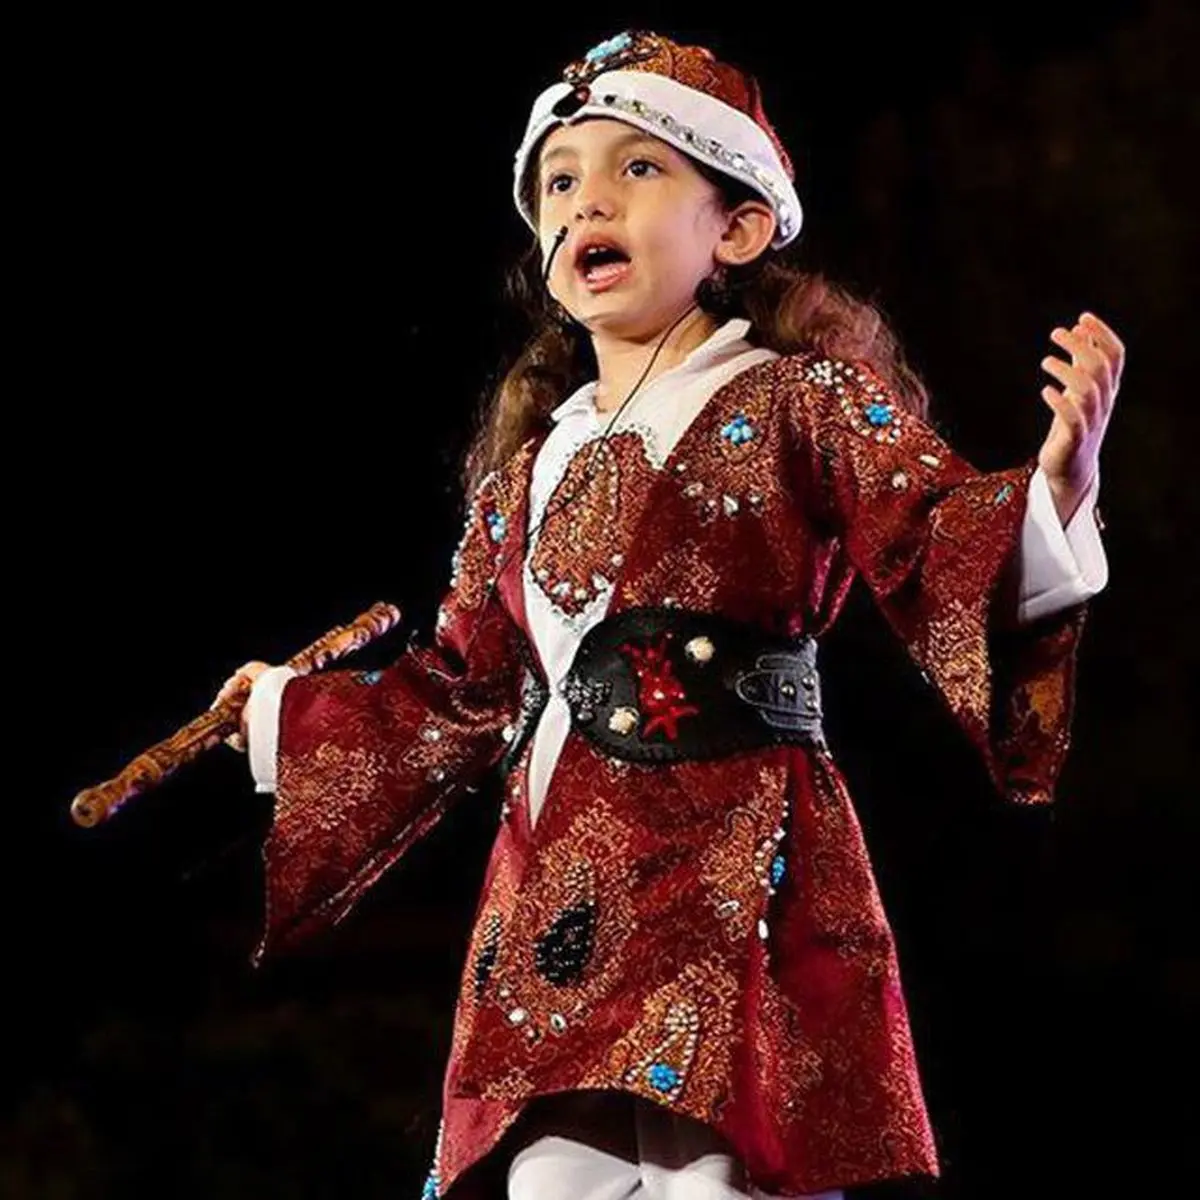  نشان و دیپلم افتخار مسابقه ی بین المللی«لوئی فرانسوا» برسینه دختر خردسال کرمانشاهی+عکس